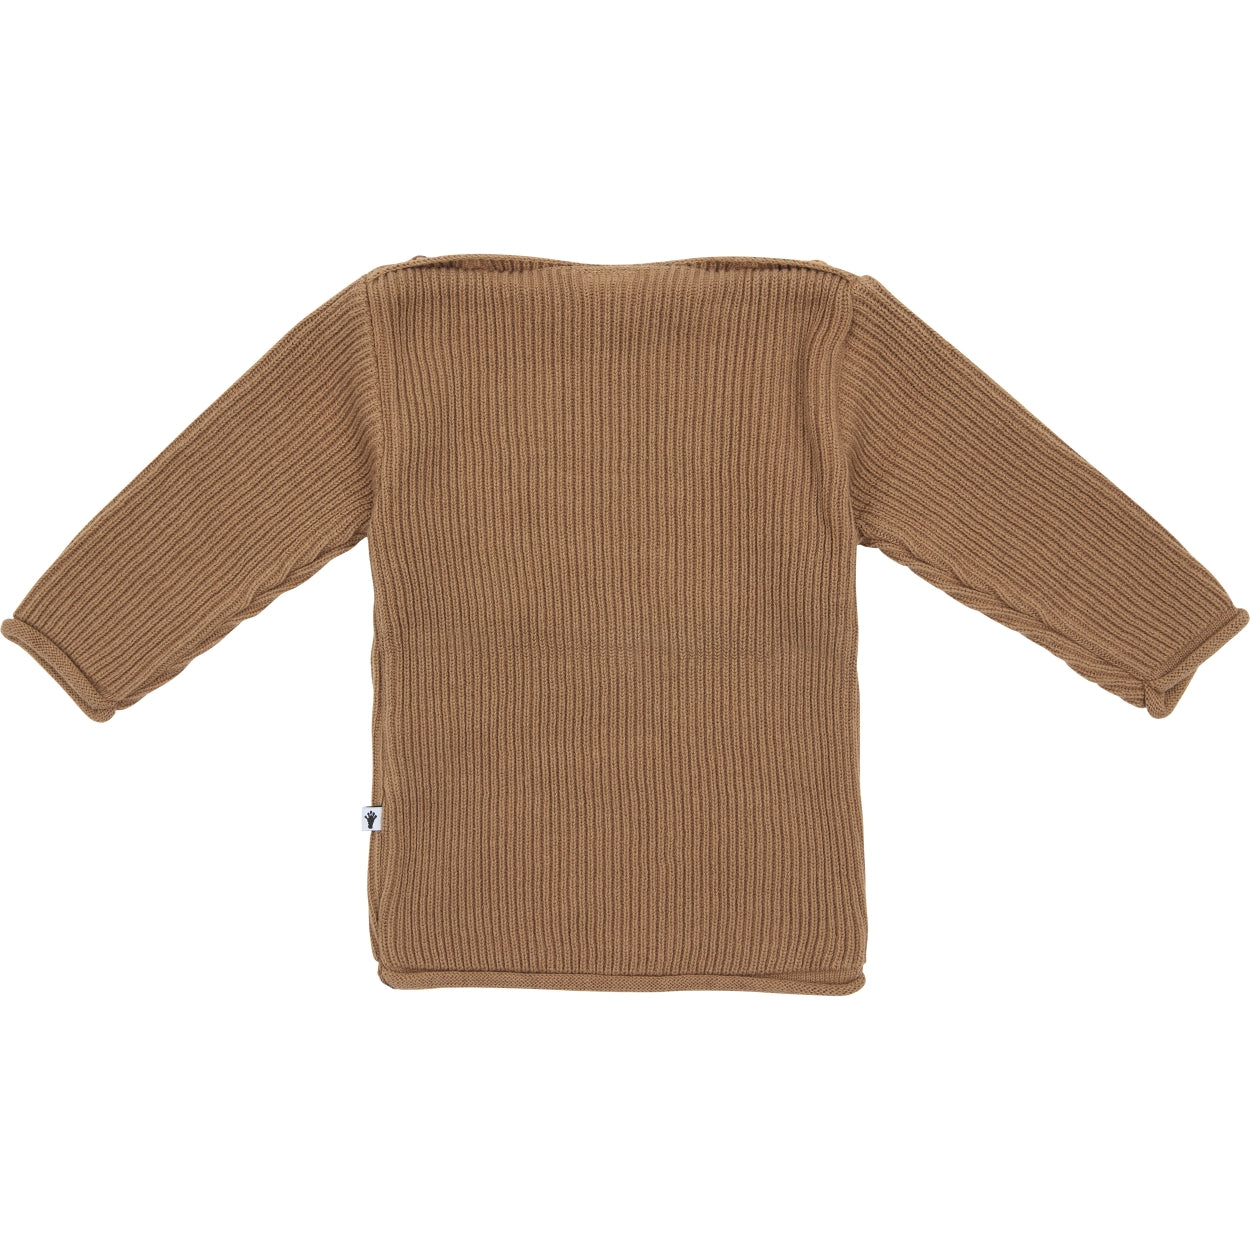 Jongens Knit Sweater van Klein Baby in de kleur Burro in maat 86.